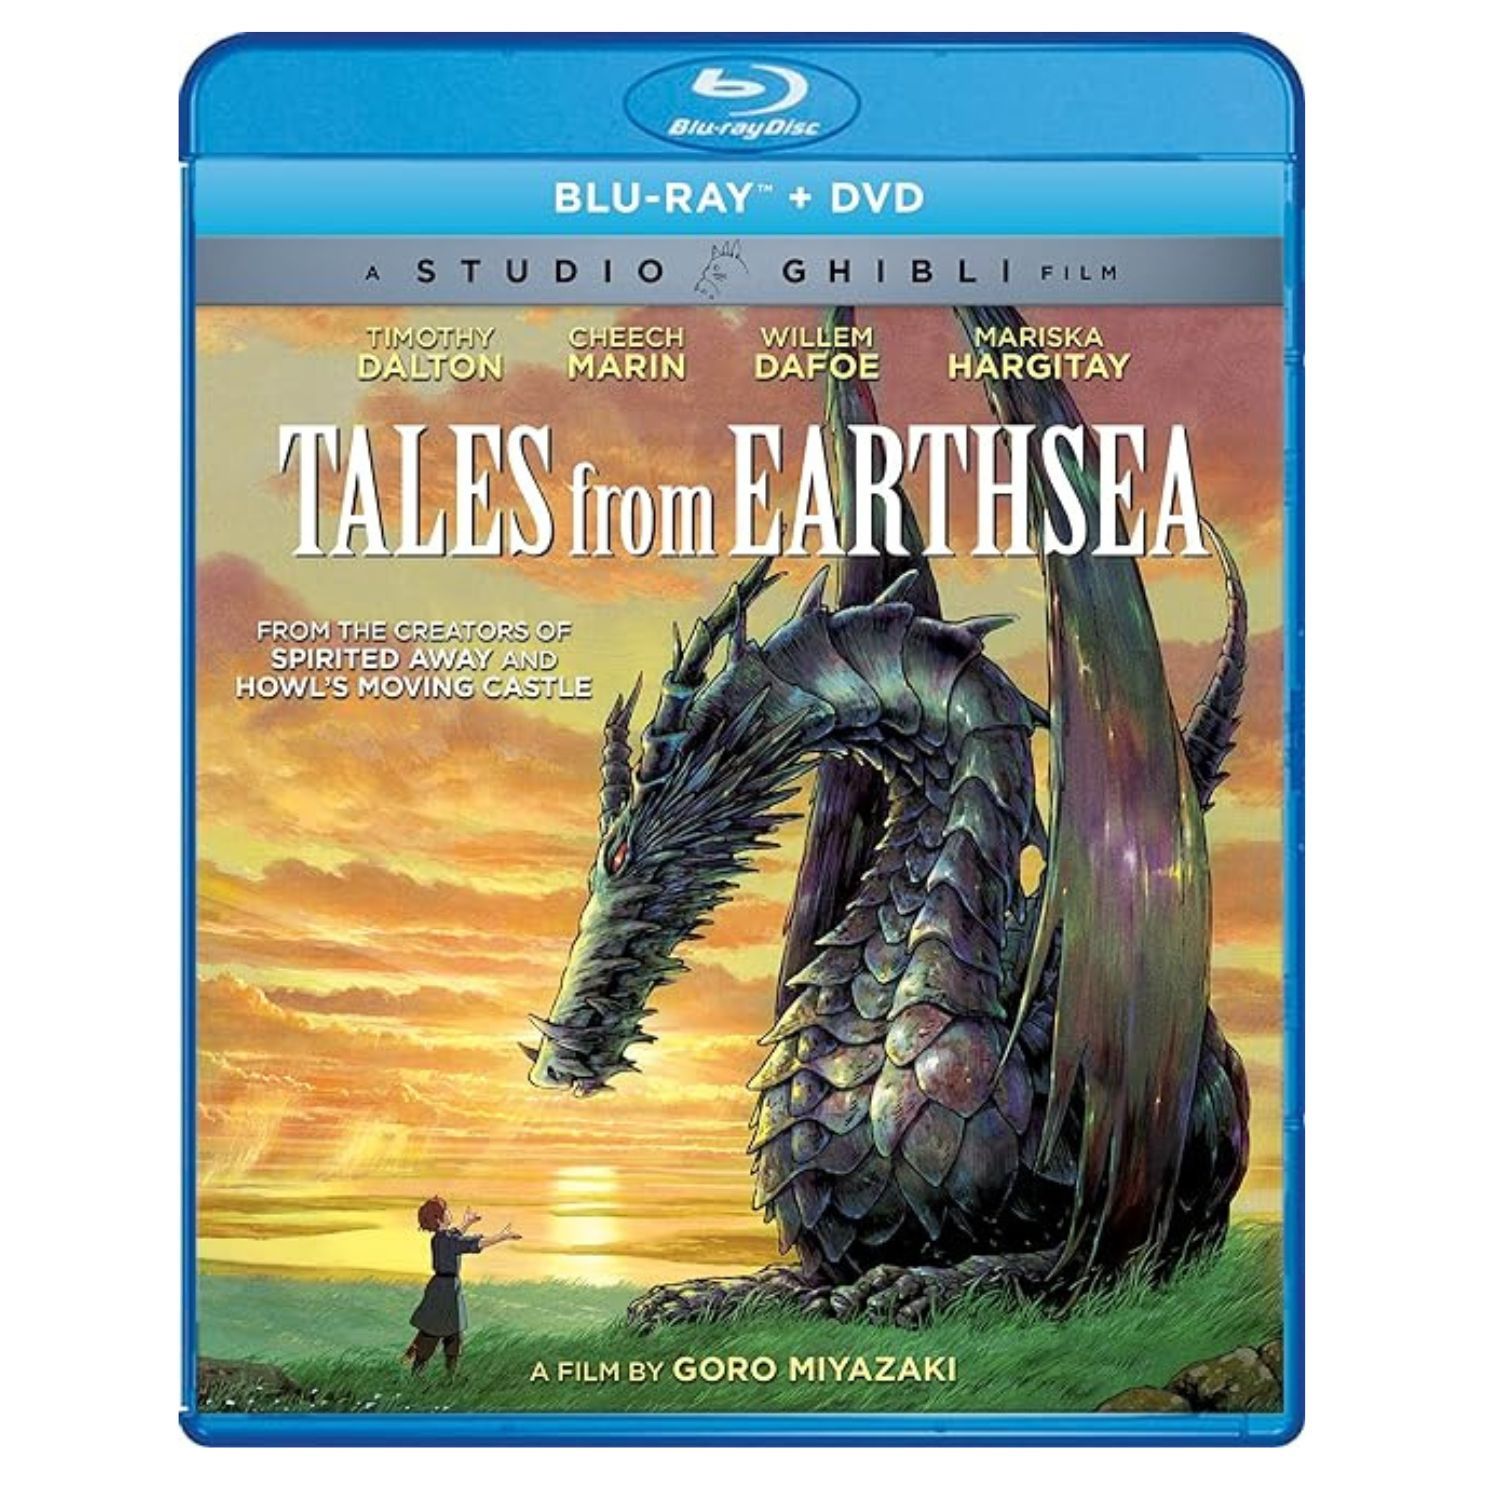 Capa do Blu-ray de Tales From Earthsea